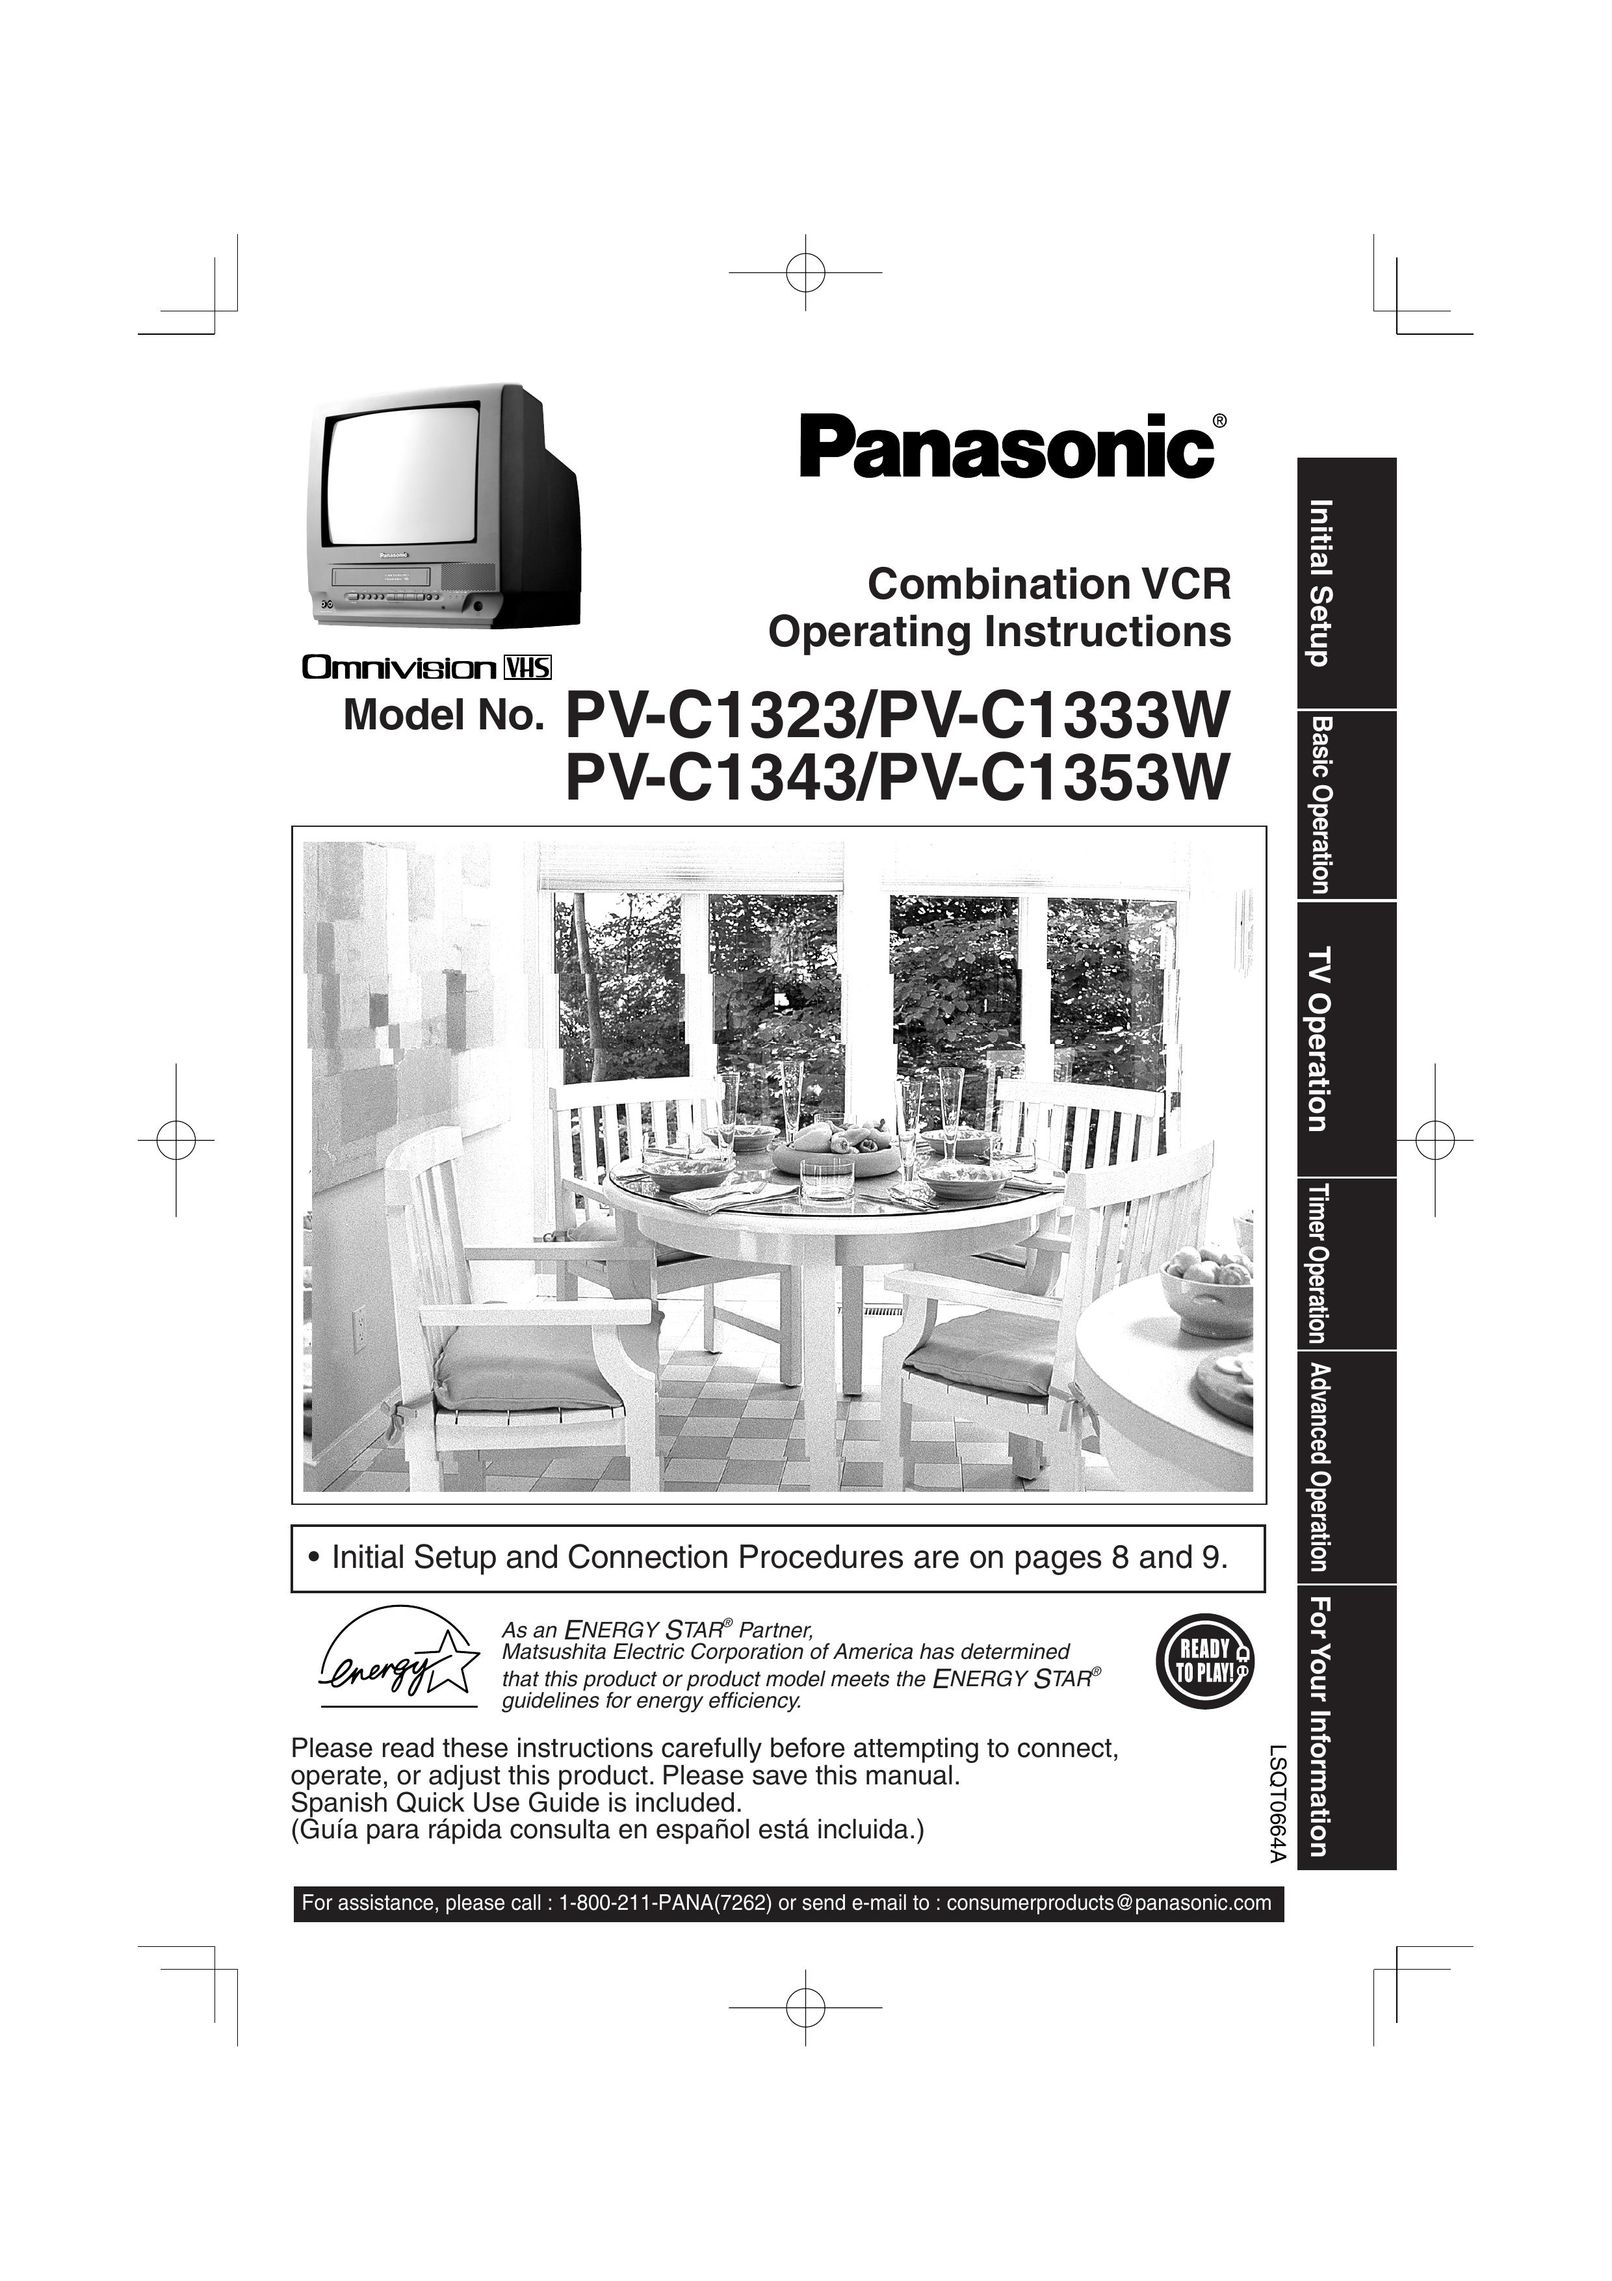 Panasonic PV-C1323 TV VCR Combo User Manual